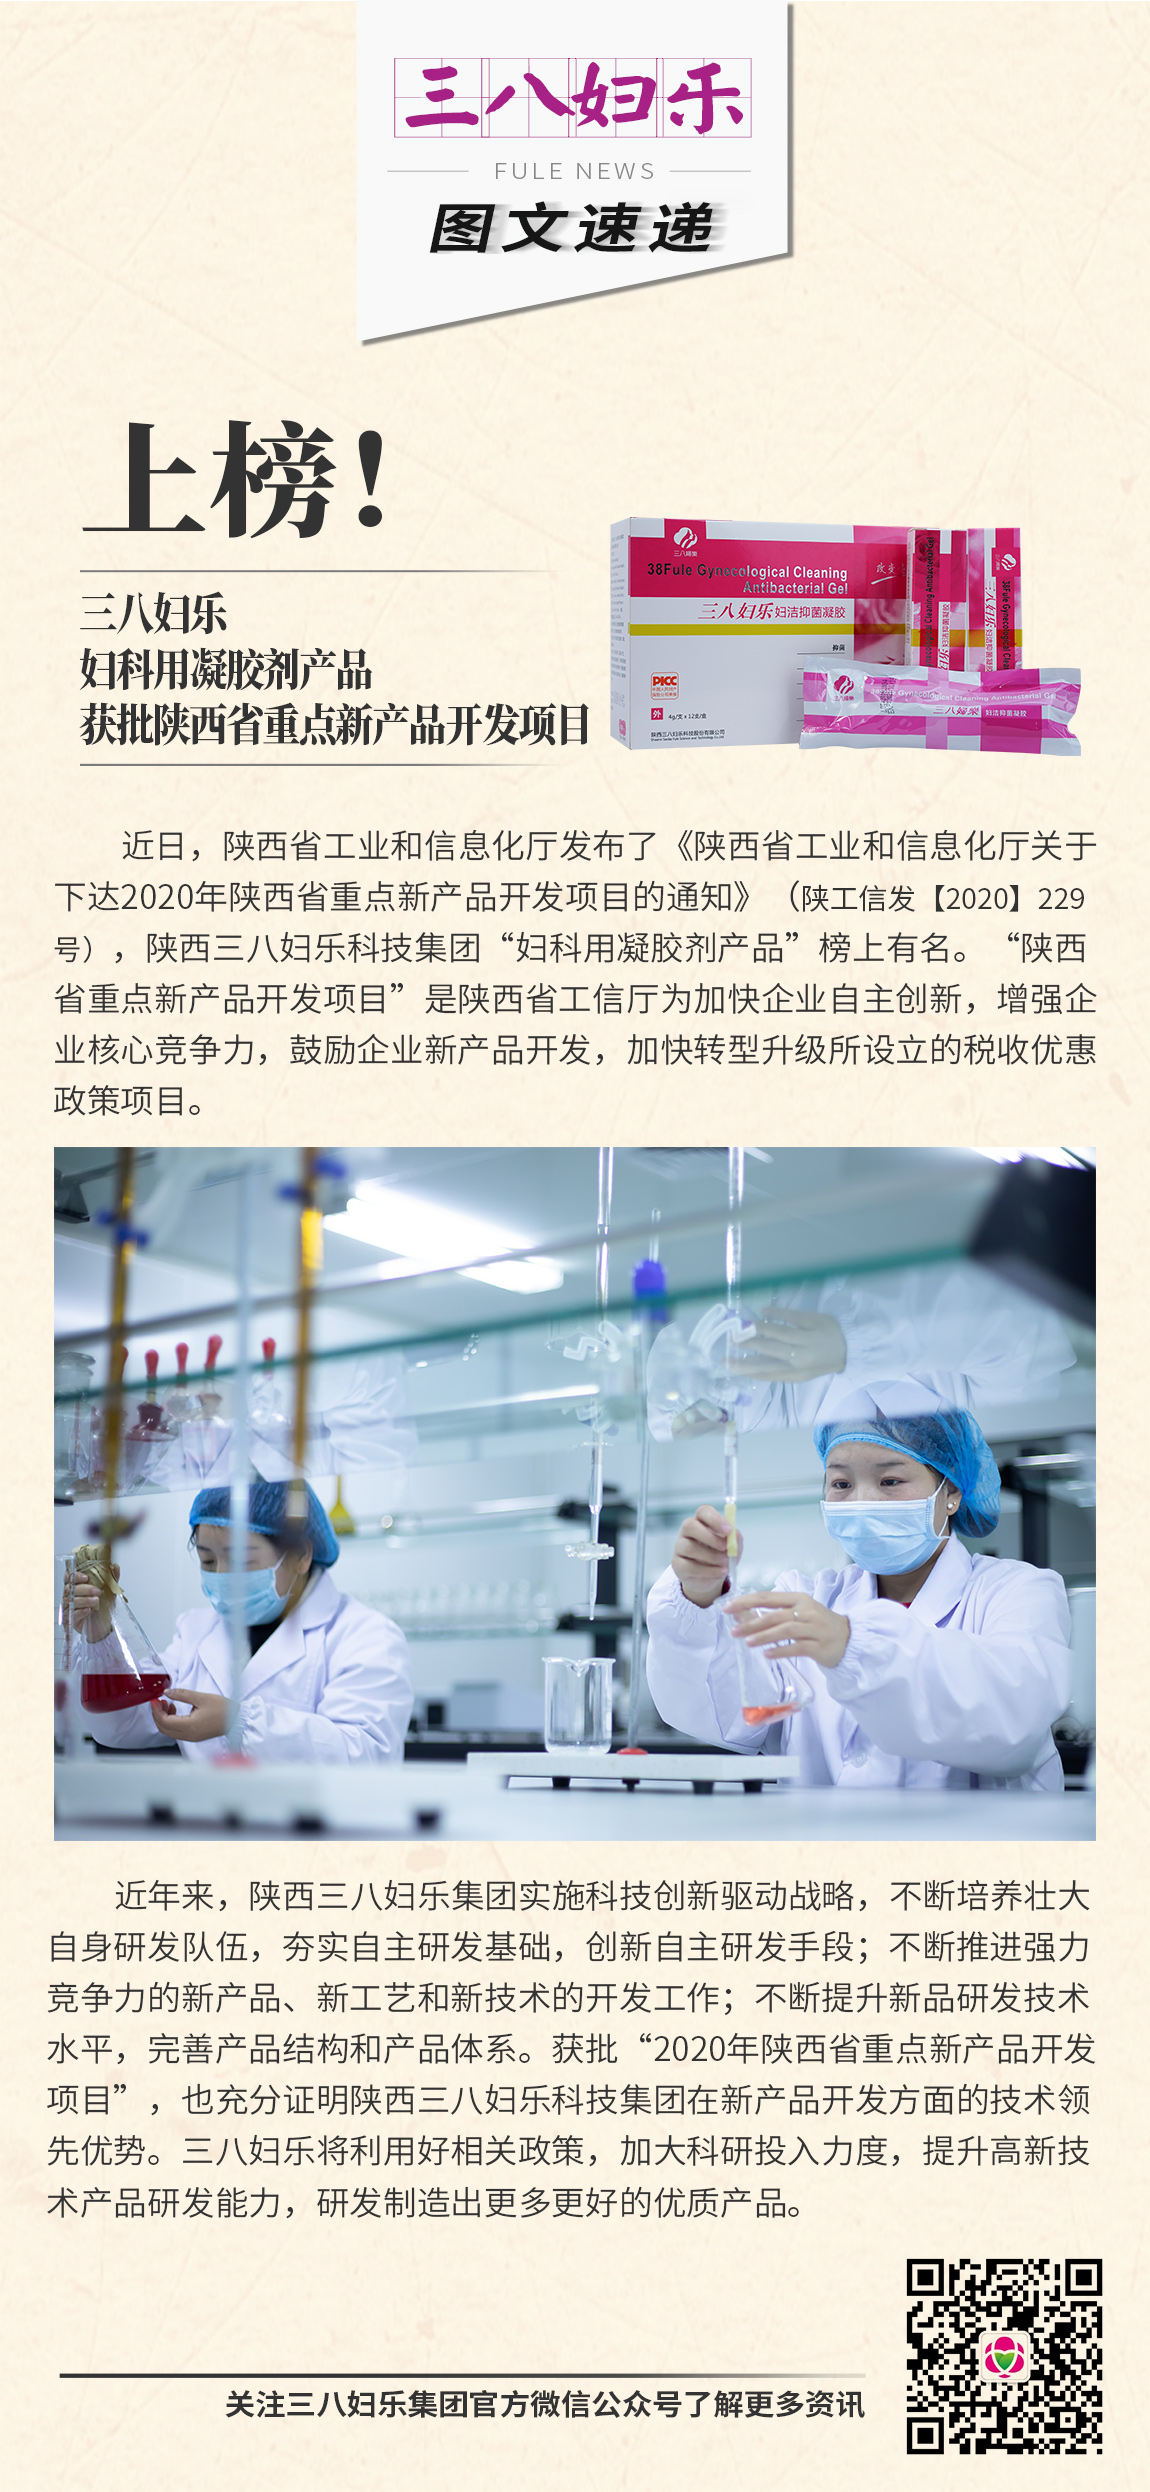 三八妇乐妇科用凝胶剂产品获批陕西省重点新产品开发项目